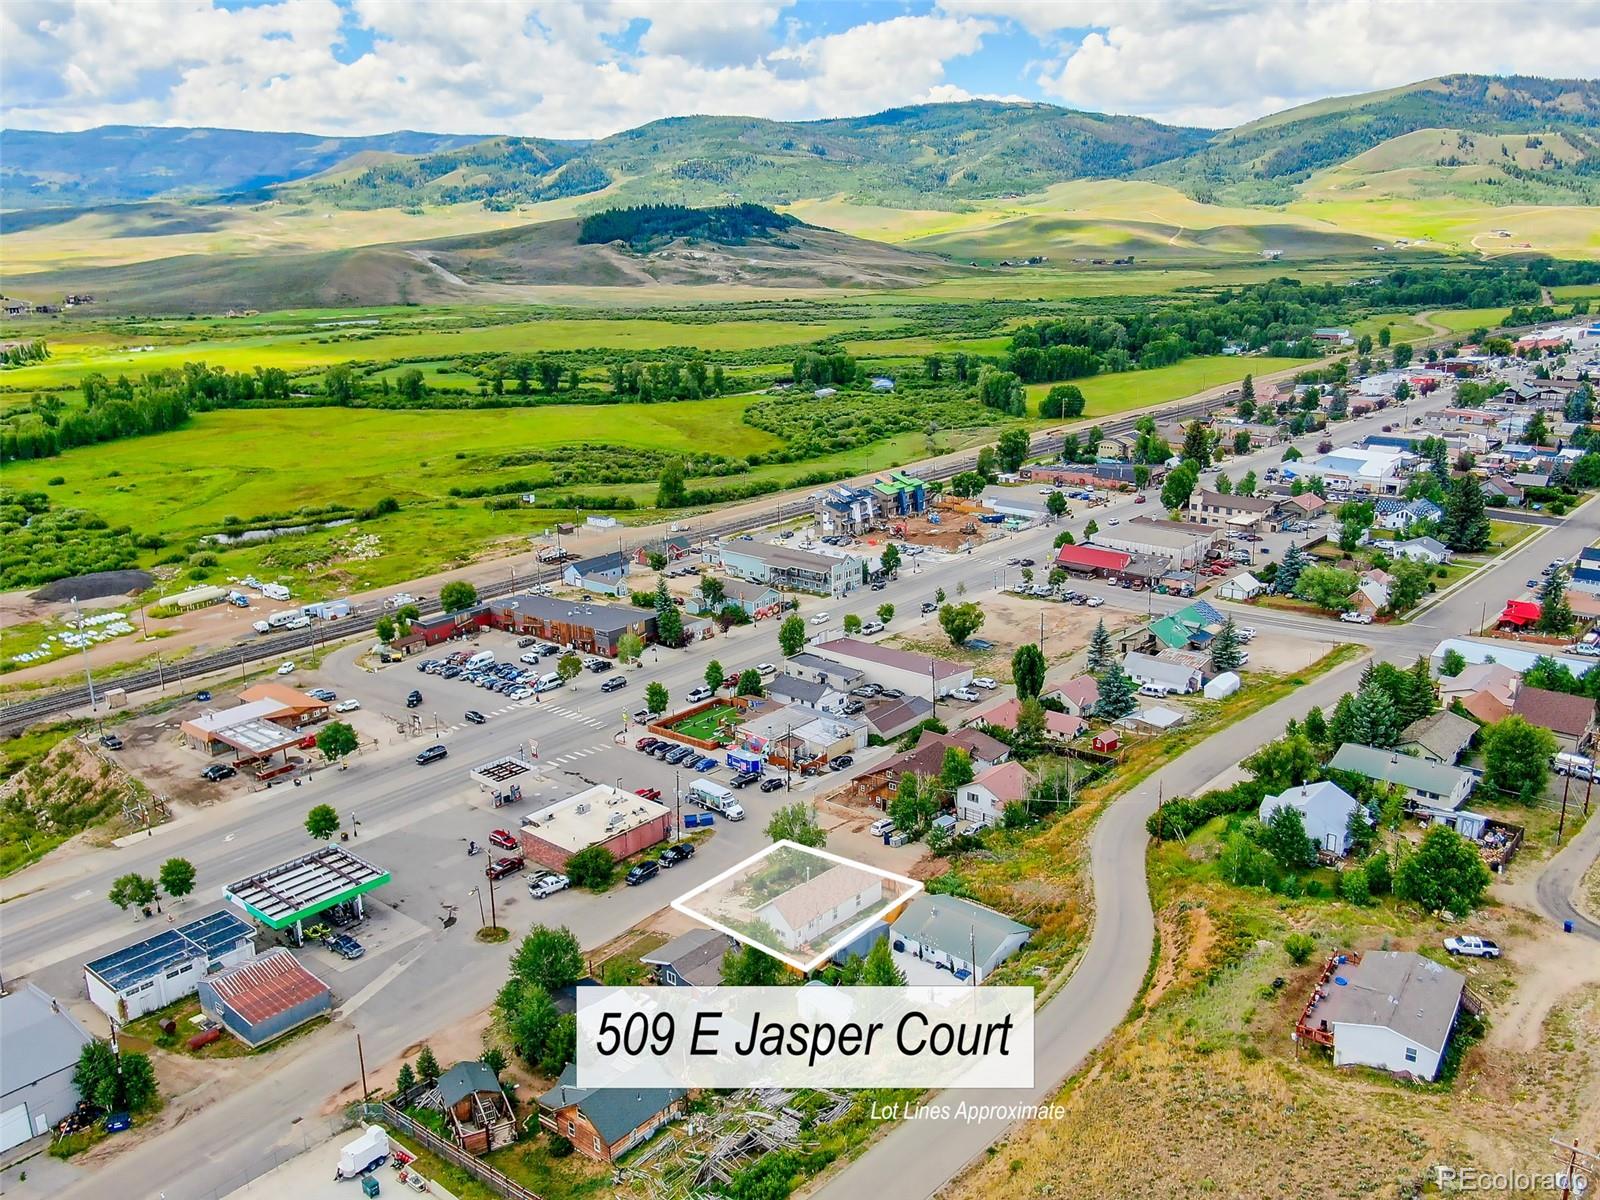 MLS Image #45 for 509 e jasper court,granby, Colorado